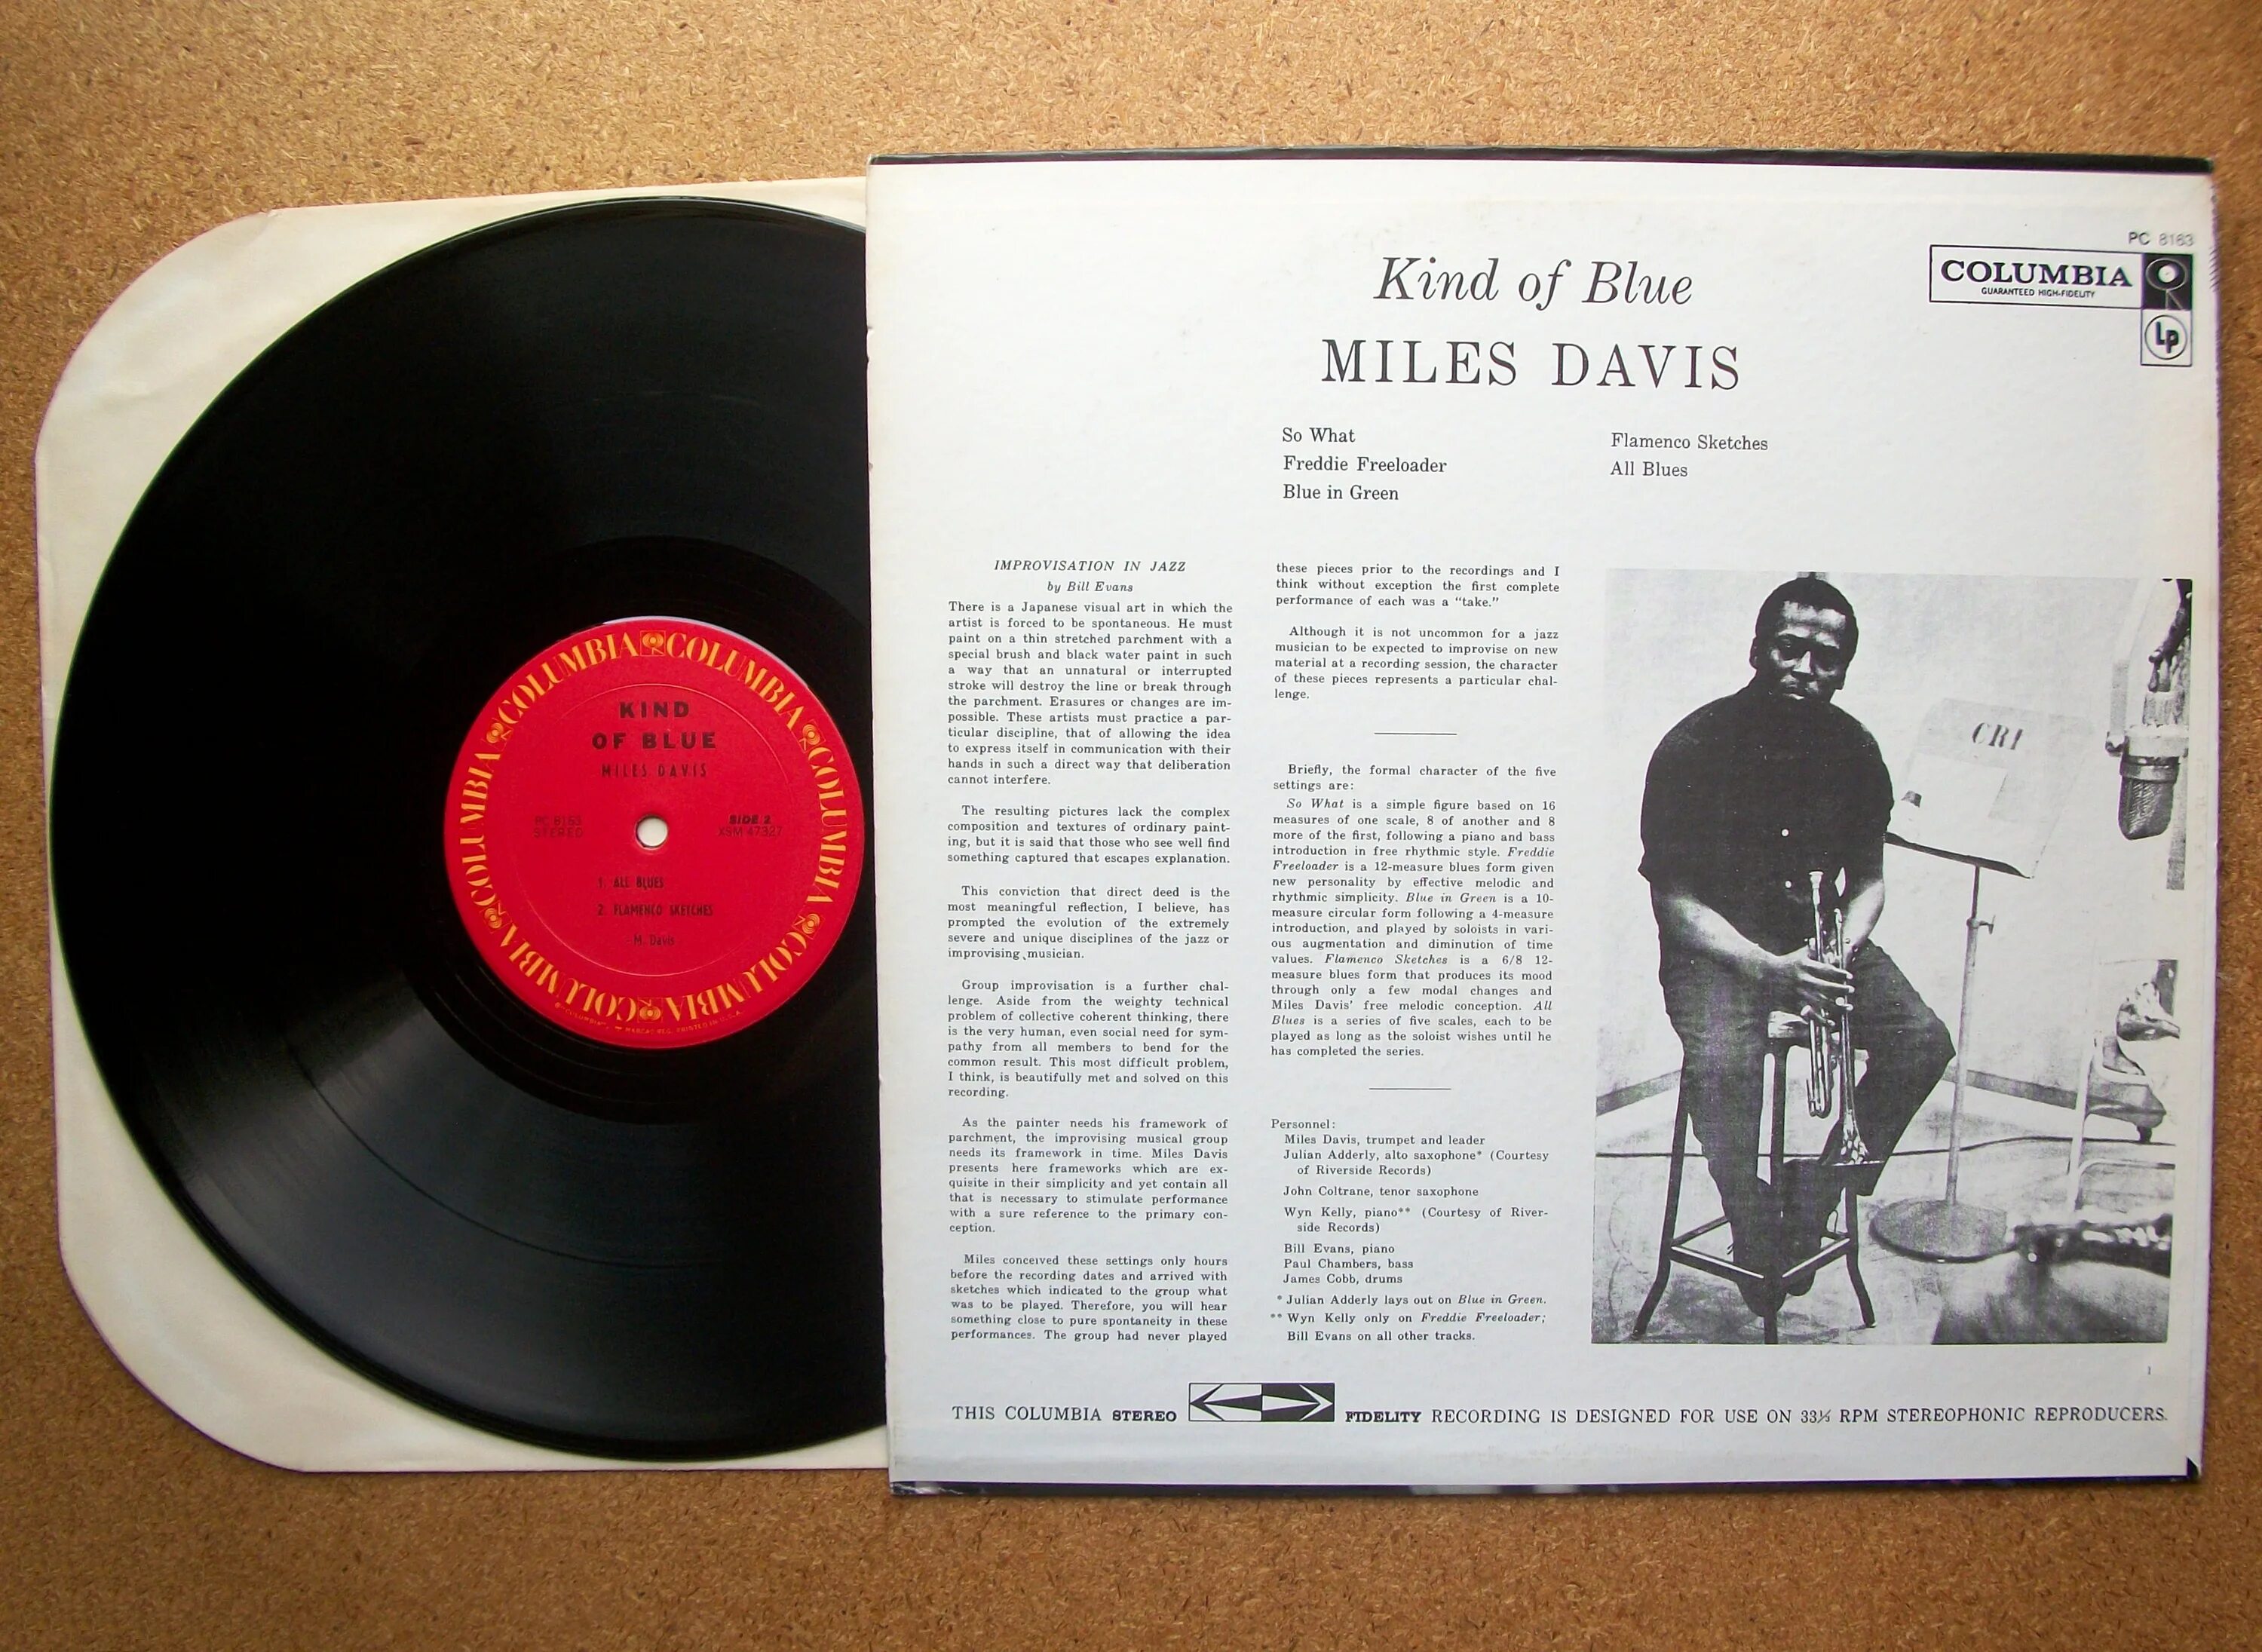 Miles Davis - kind of Blue. Kind of Blue винил. Miles Davis kind of Blue пластинка Music on Vinyl. Зеленая пластинка Майлс Дэвис.